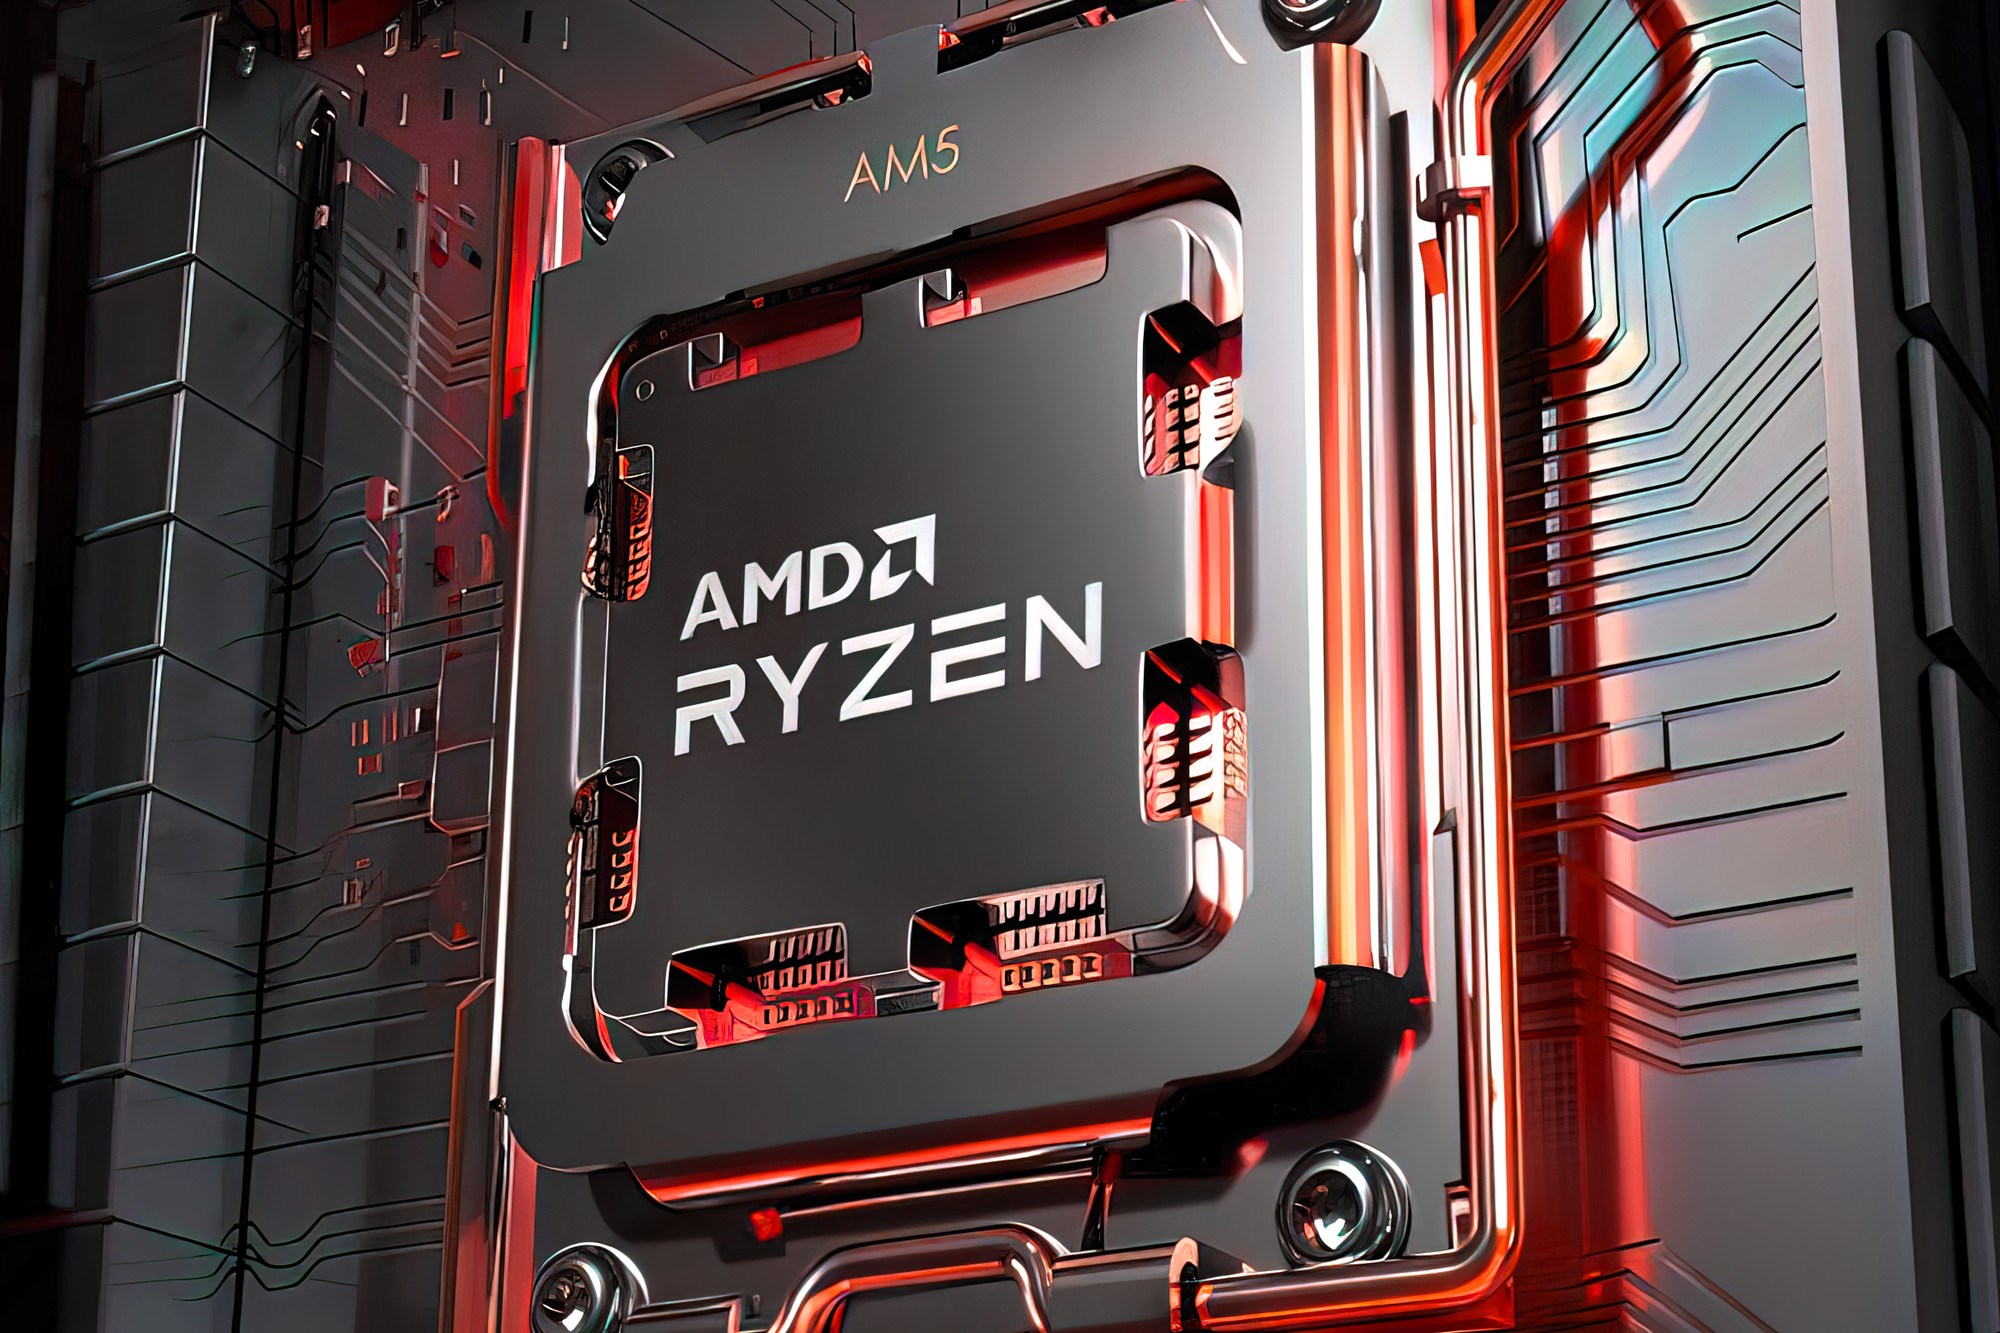 AMD’nin Ryzen işlemcilerinde ciddi güvenlik açığı keşfedildi